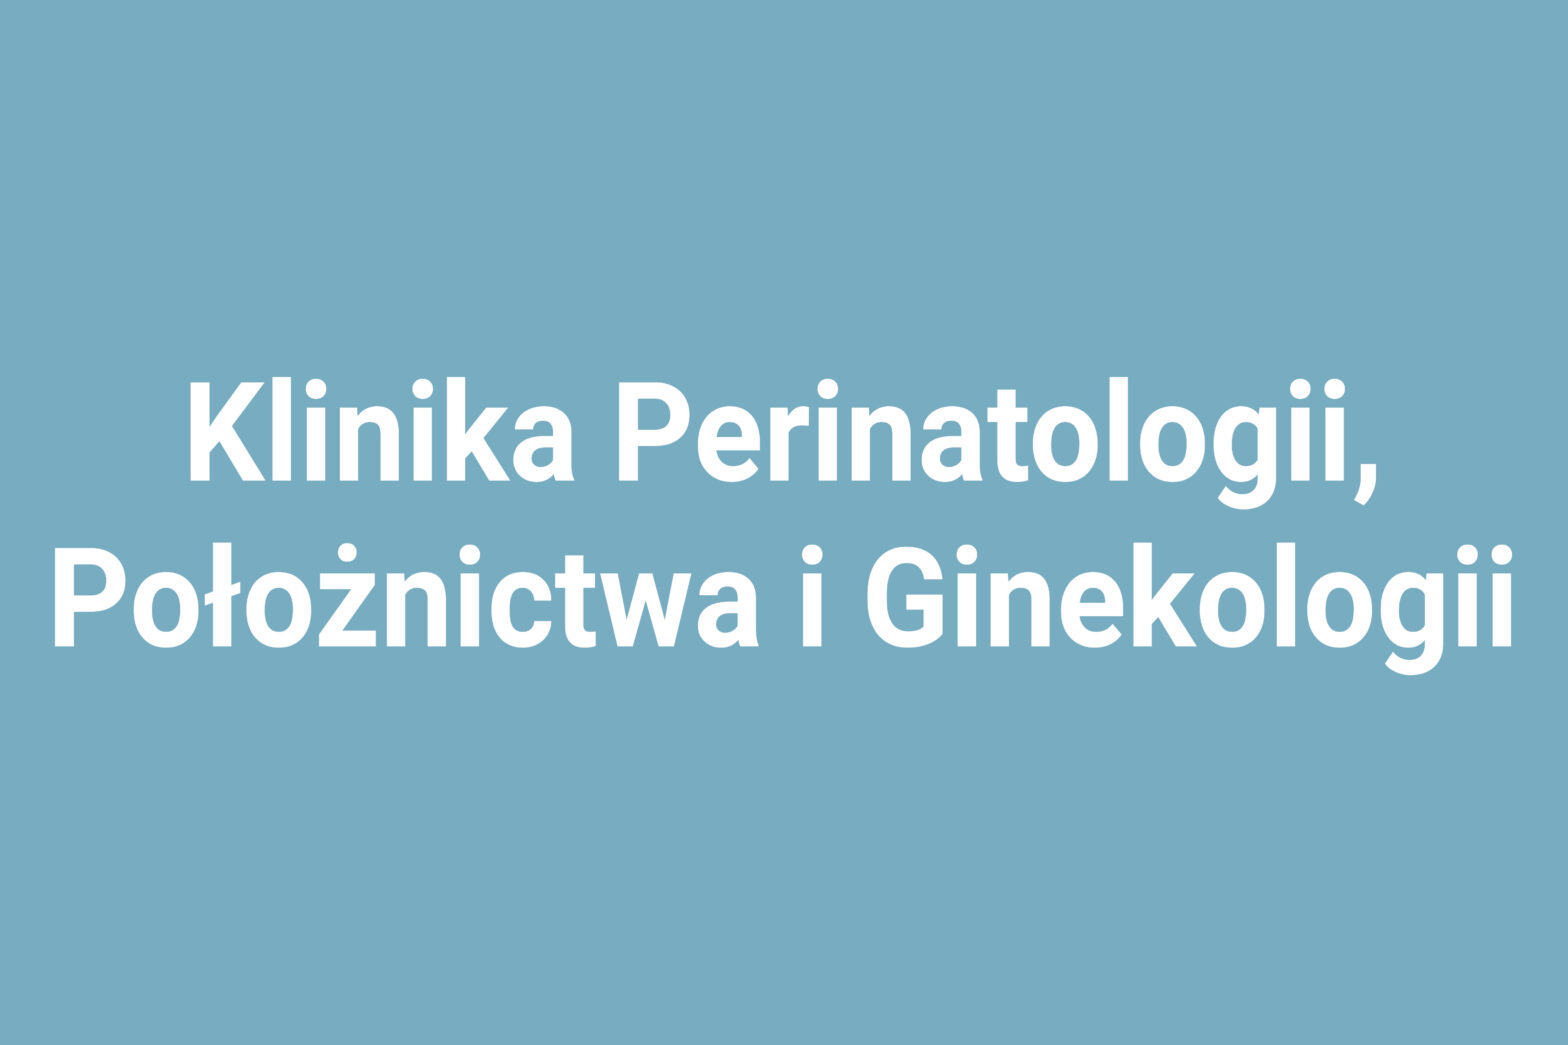 Klinika Perinatologii, Położnictwa i Ginekologii